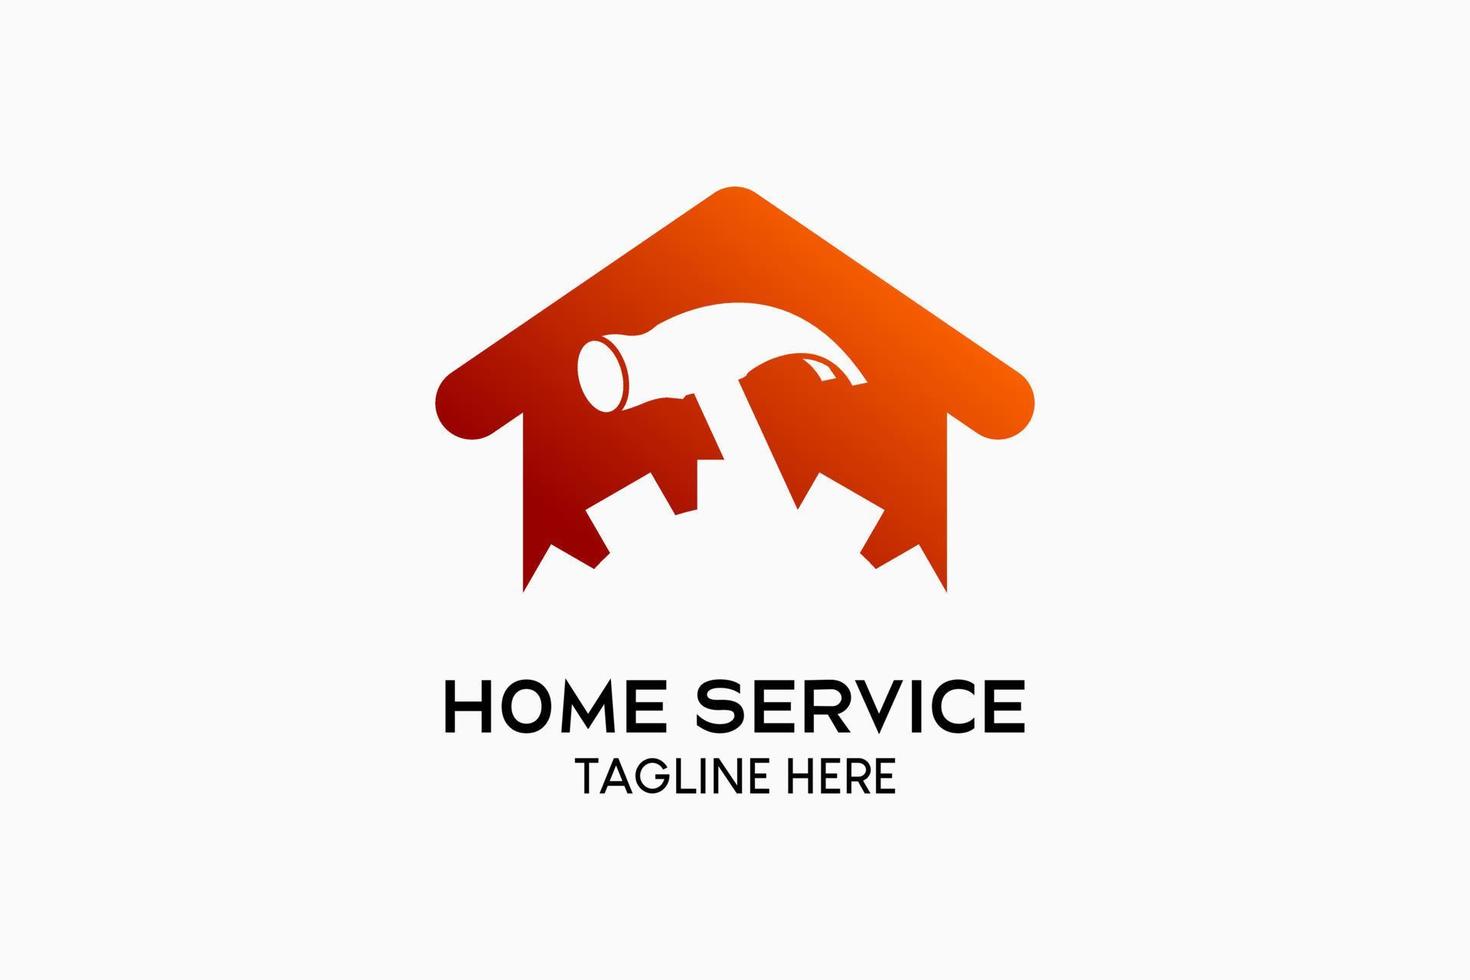 création de logo de service à domicile ou d'amélioration de l'habitat, silhouette d'un marteau se mélangeant à un engrenage dans une icône de maison. illustration vectorielle moderne vecteur